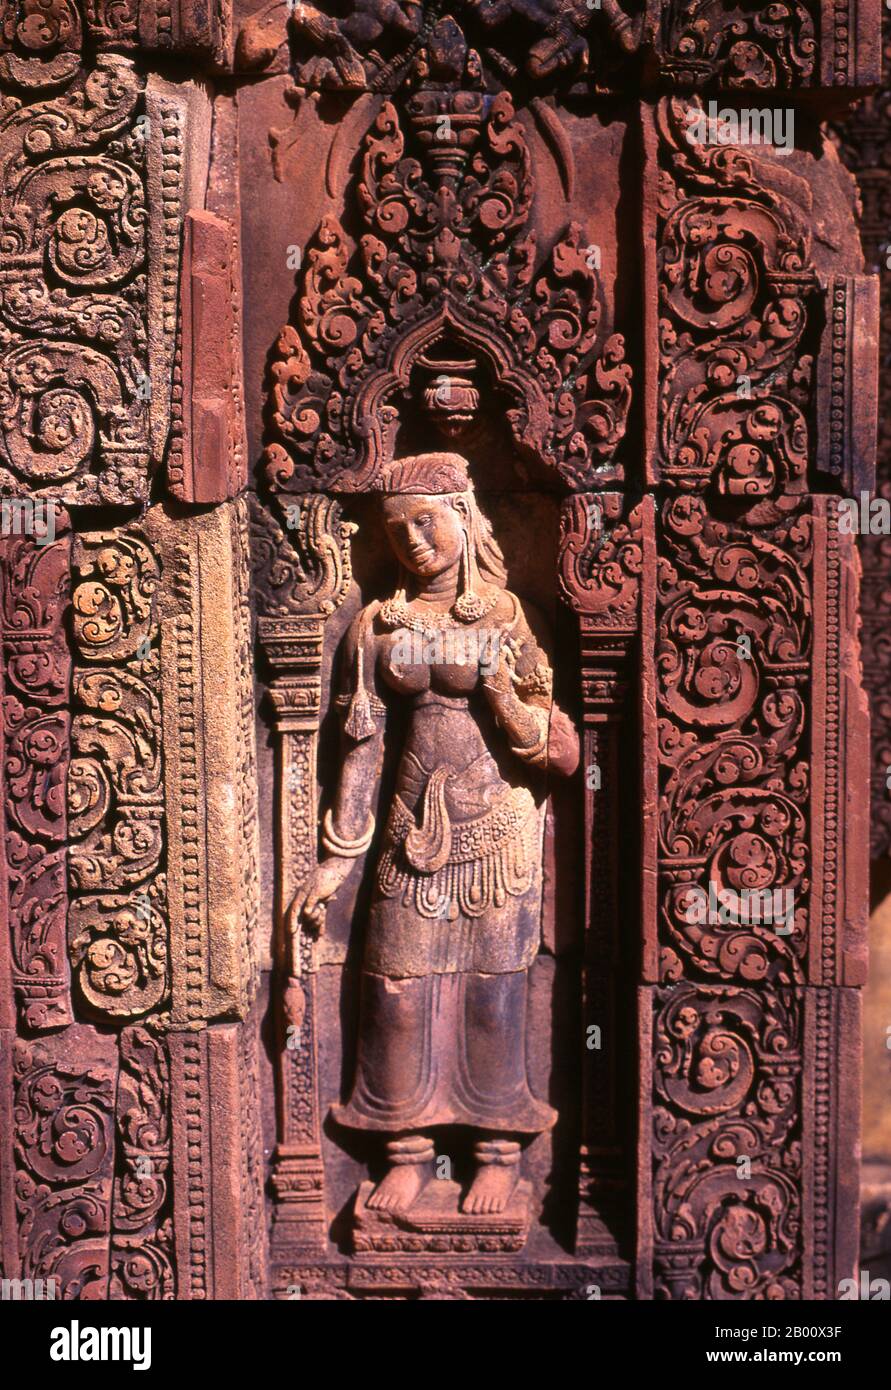 Kambodscha: Devata (Göttliche Nymphe), Banteay Srei (Zitadelle der Frauen), bei Angkor. Banteay Srei (oder Banteay Srey) ist ein kambodschanischer Tempel aus dem 10. Jahrhundert, der dem Hindu-gott Shiva gewidmet ist und im Nordosten der Hauptgruppe von Tempeln in Angkor liegt. Banteay Srei ist weitgehend aus rotem Sandstein gebaut, ein Medium, das sich für die aufwendigen dekorativen Wandschnitzereien eignet, die noch heute zu beobachten sind. Banteay Srei wird manchmal als das "Juwel der Khmer-Kunst" bezeichnet. Stockfoto